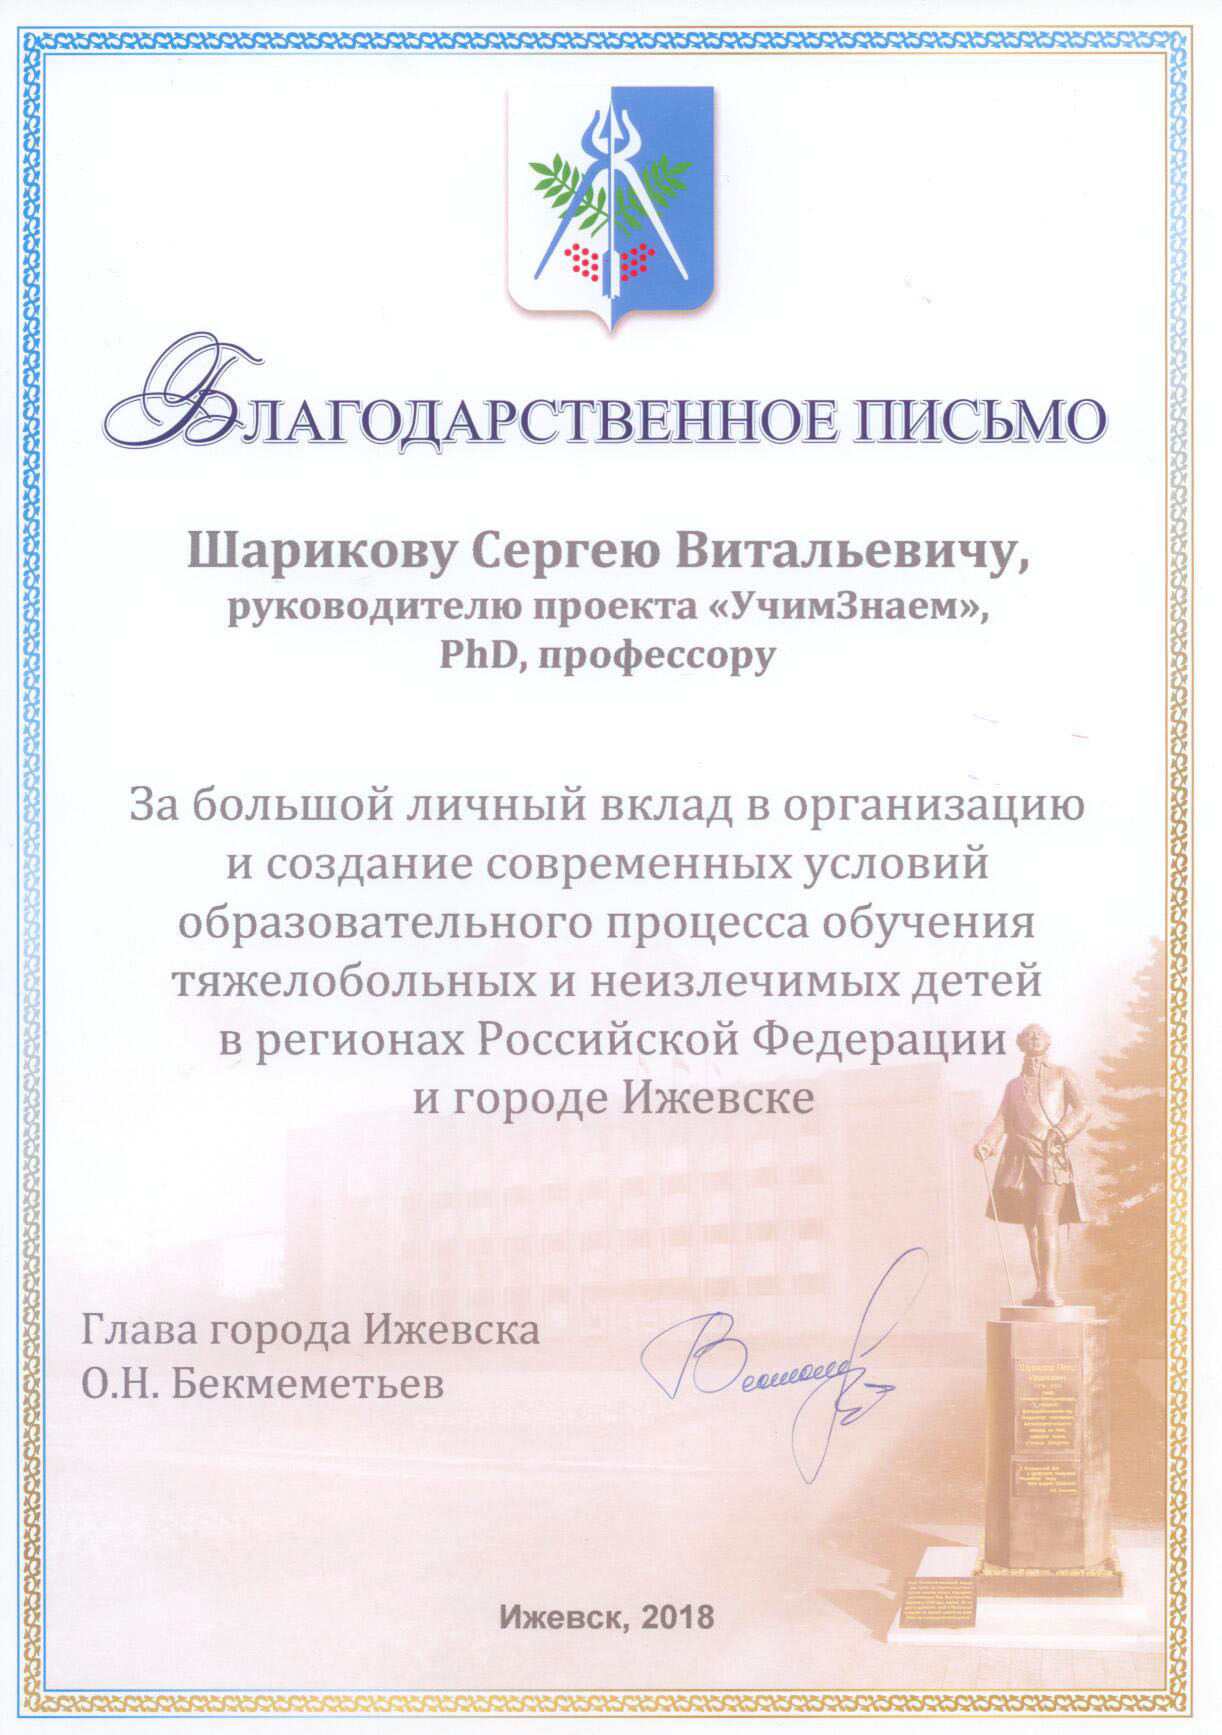 Благодарственное письмо Шарикову Сергею Витальевичу